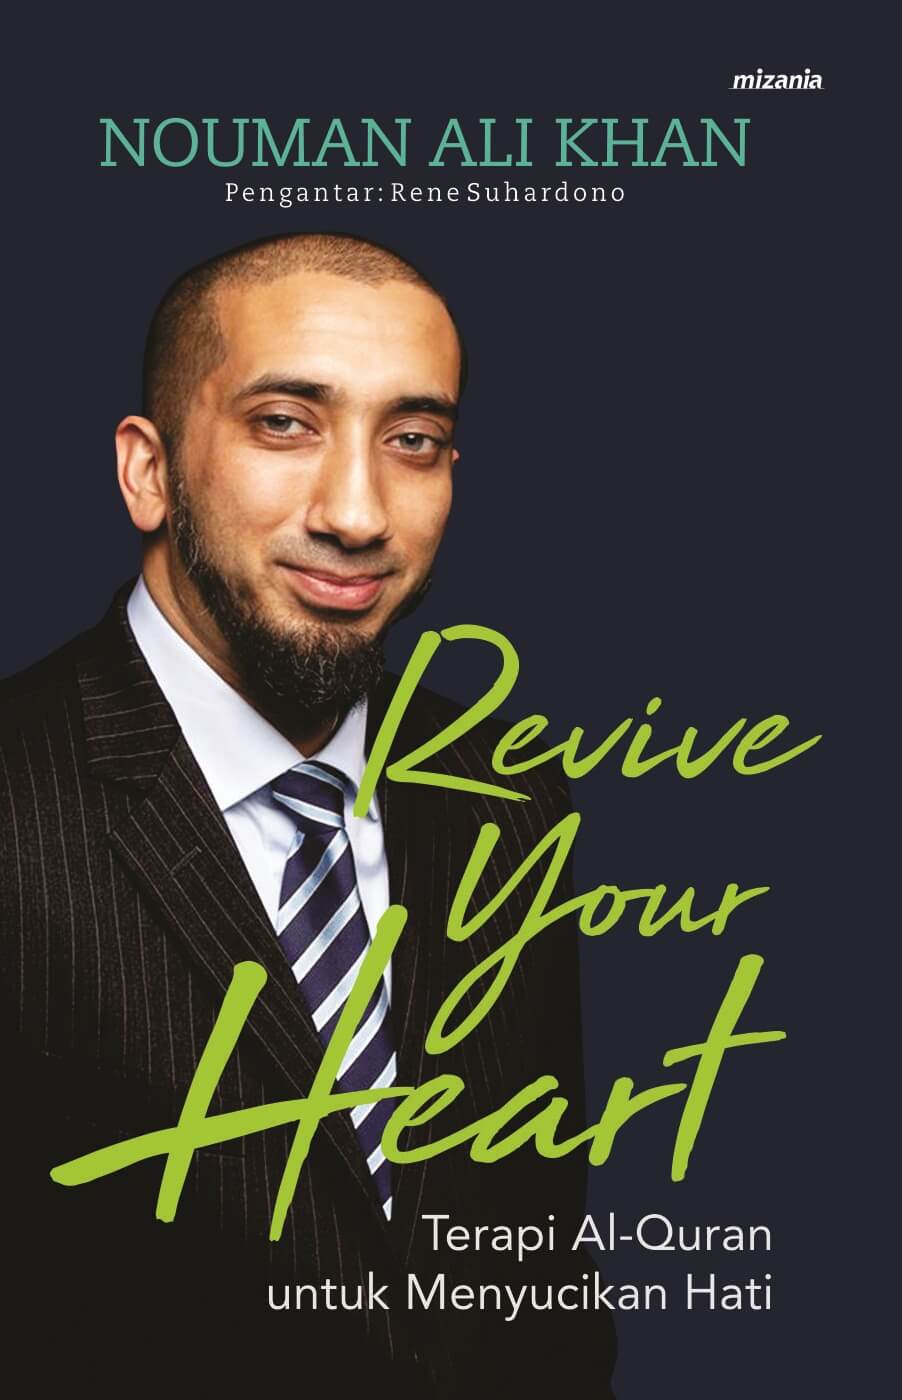 REVIVE YOUR HEART TERAPI AL-QURAN UNTUK MENYUCIKAN HATI